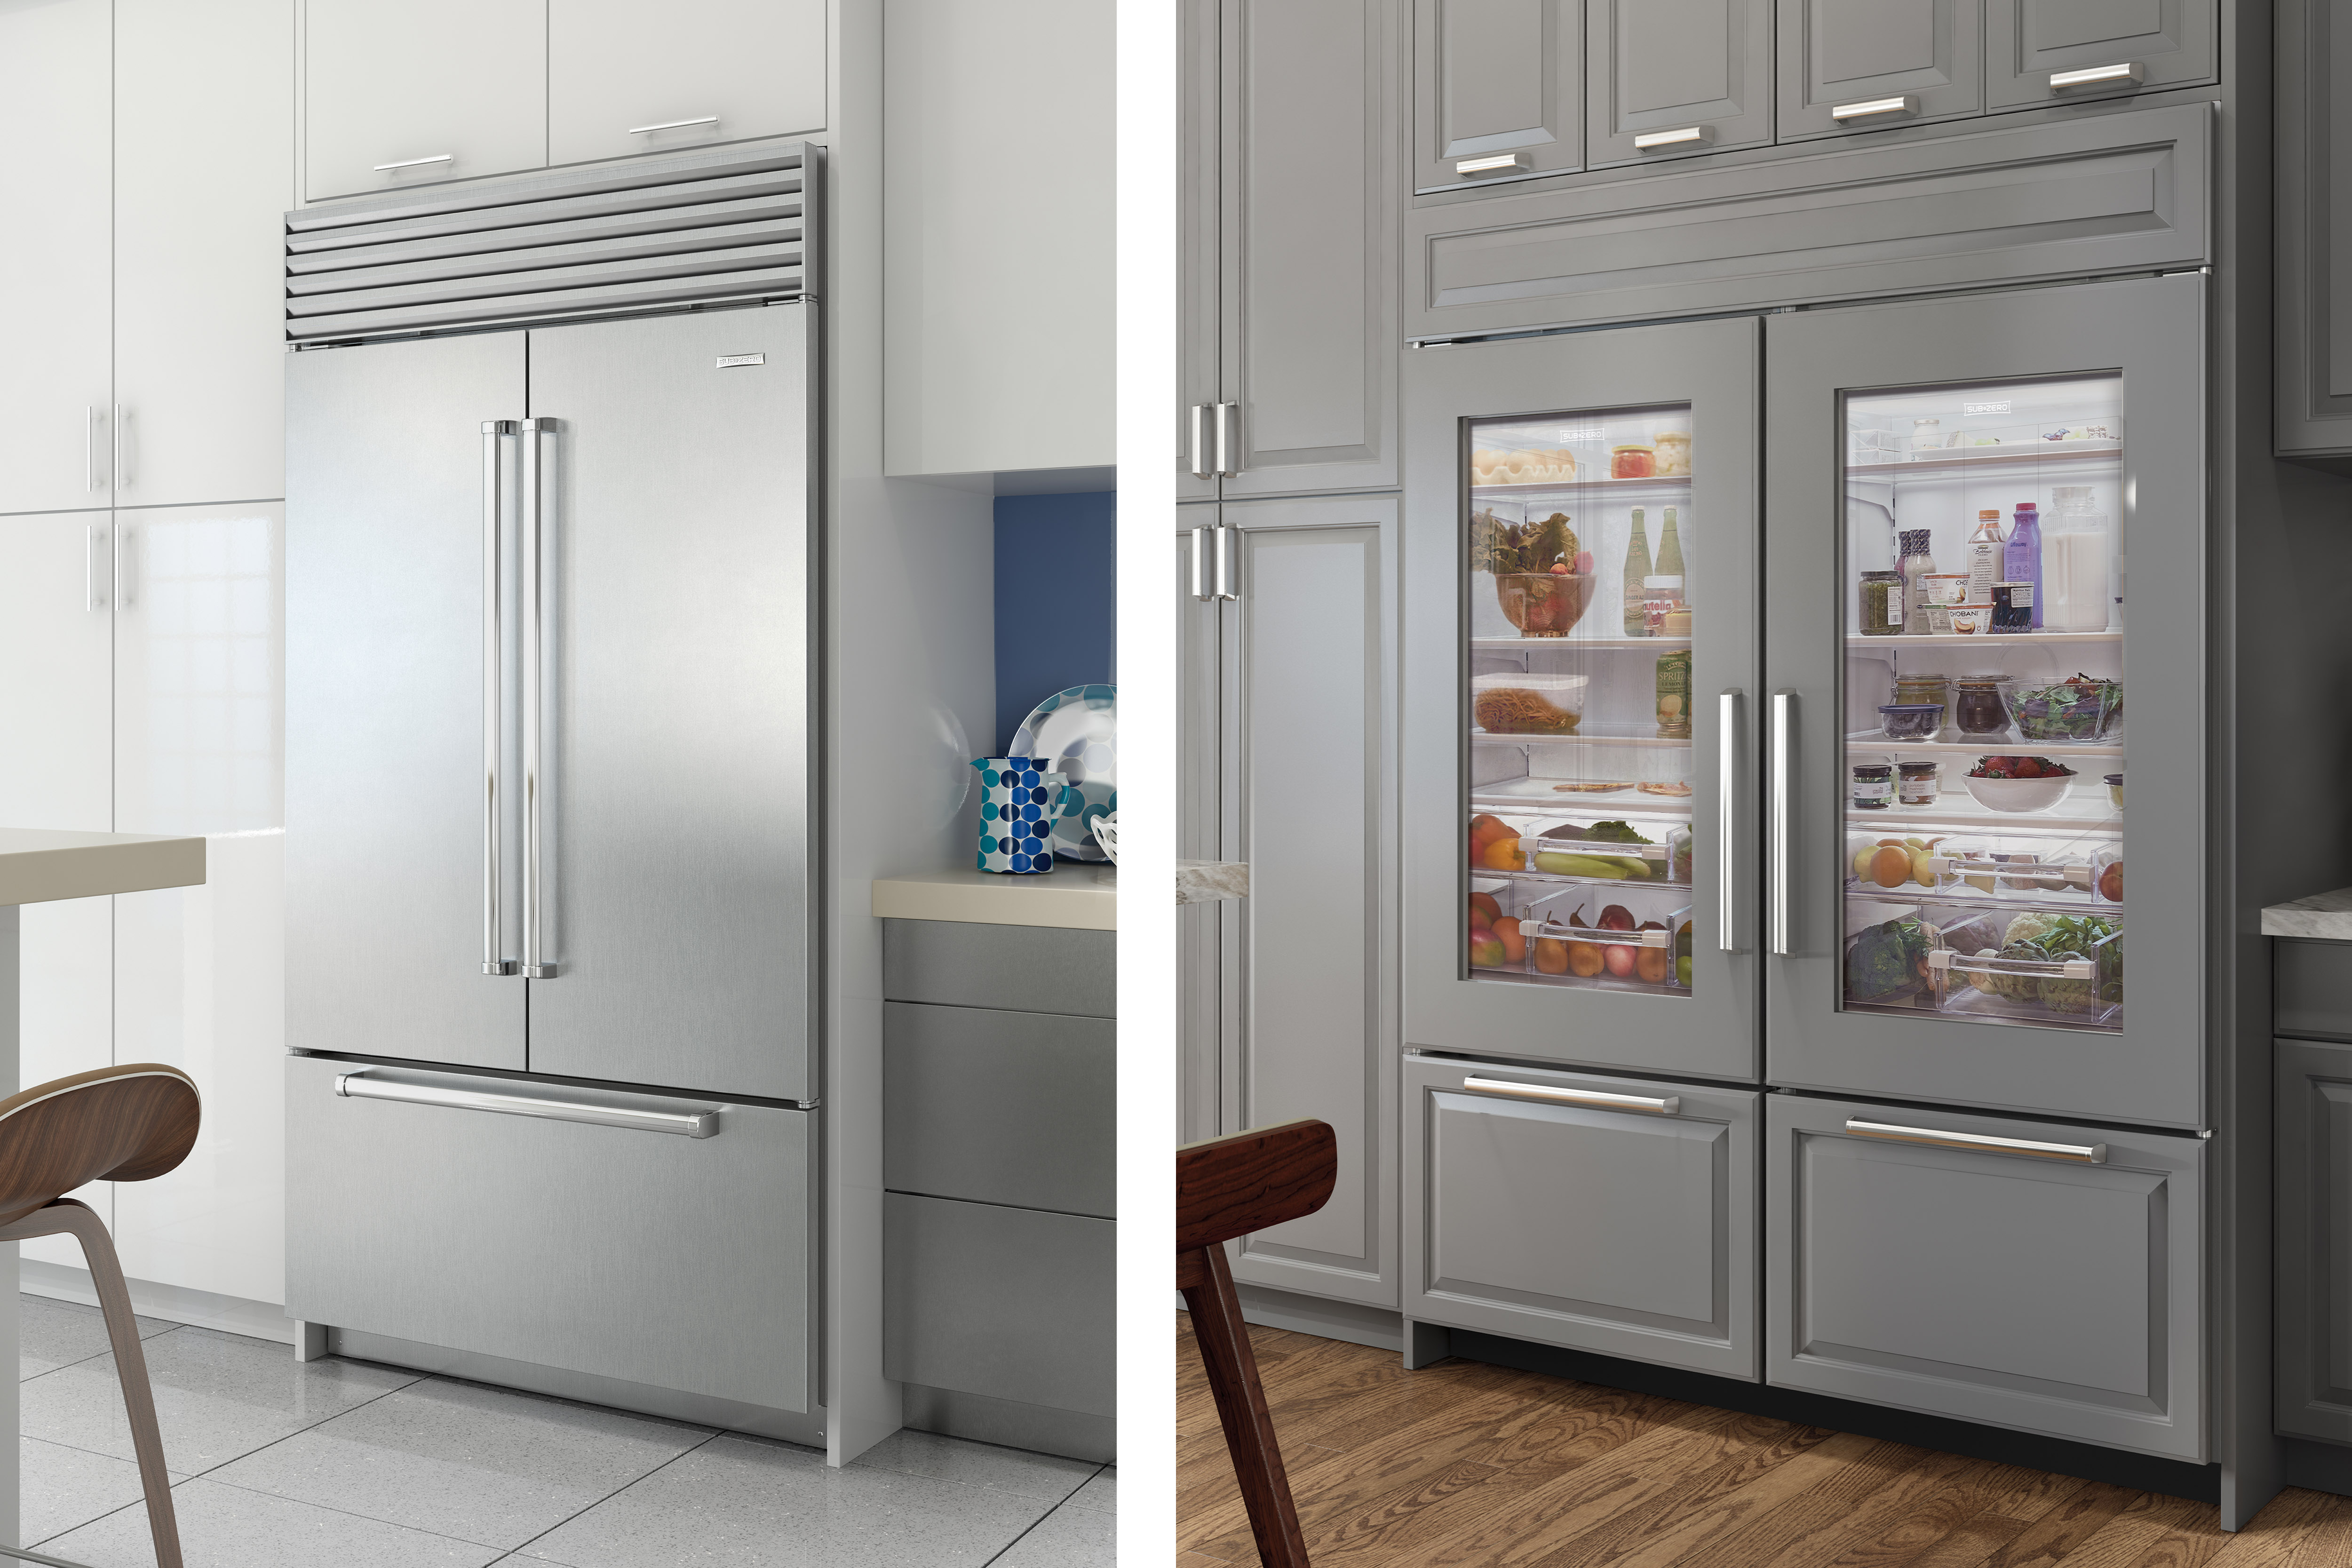 SubZero Refrigerators FullSize Refrigeration